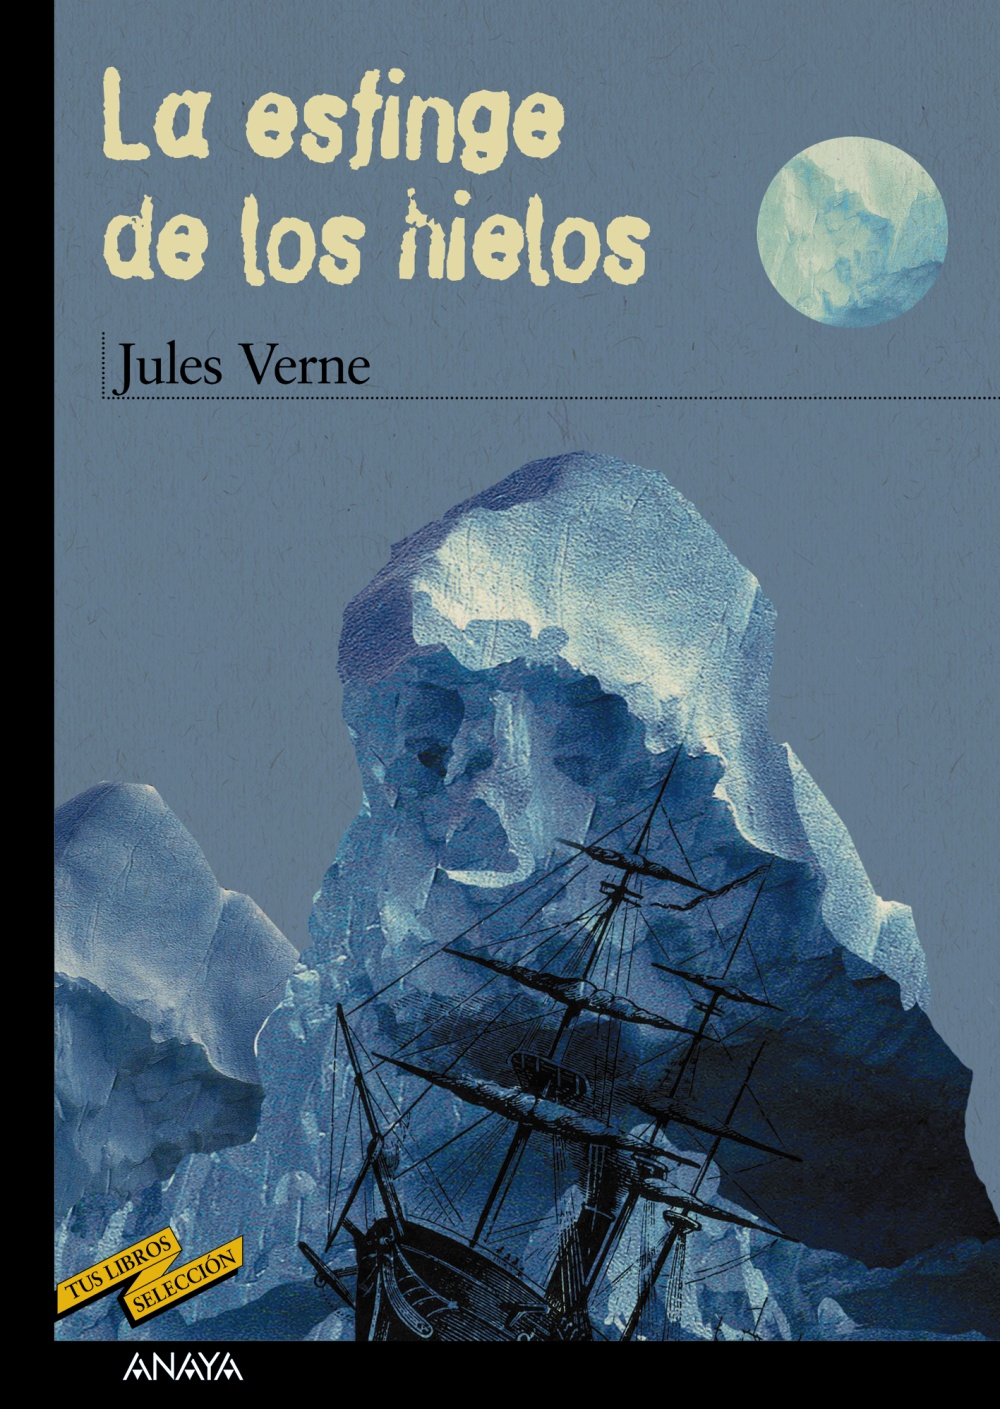 Resultado de imagen para La Esfinge de los Hielos - Julio Verne